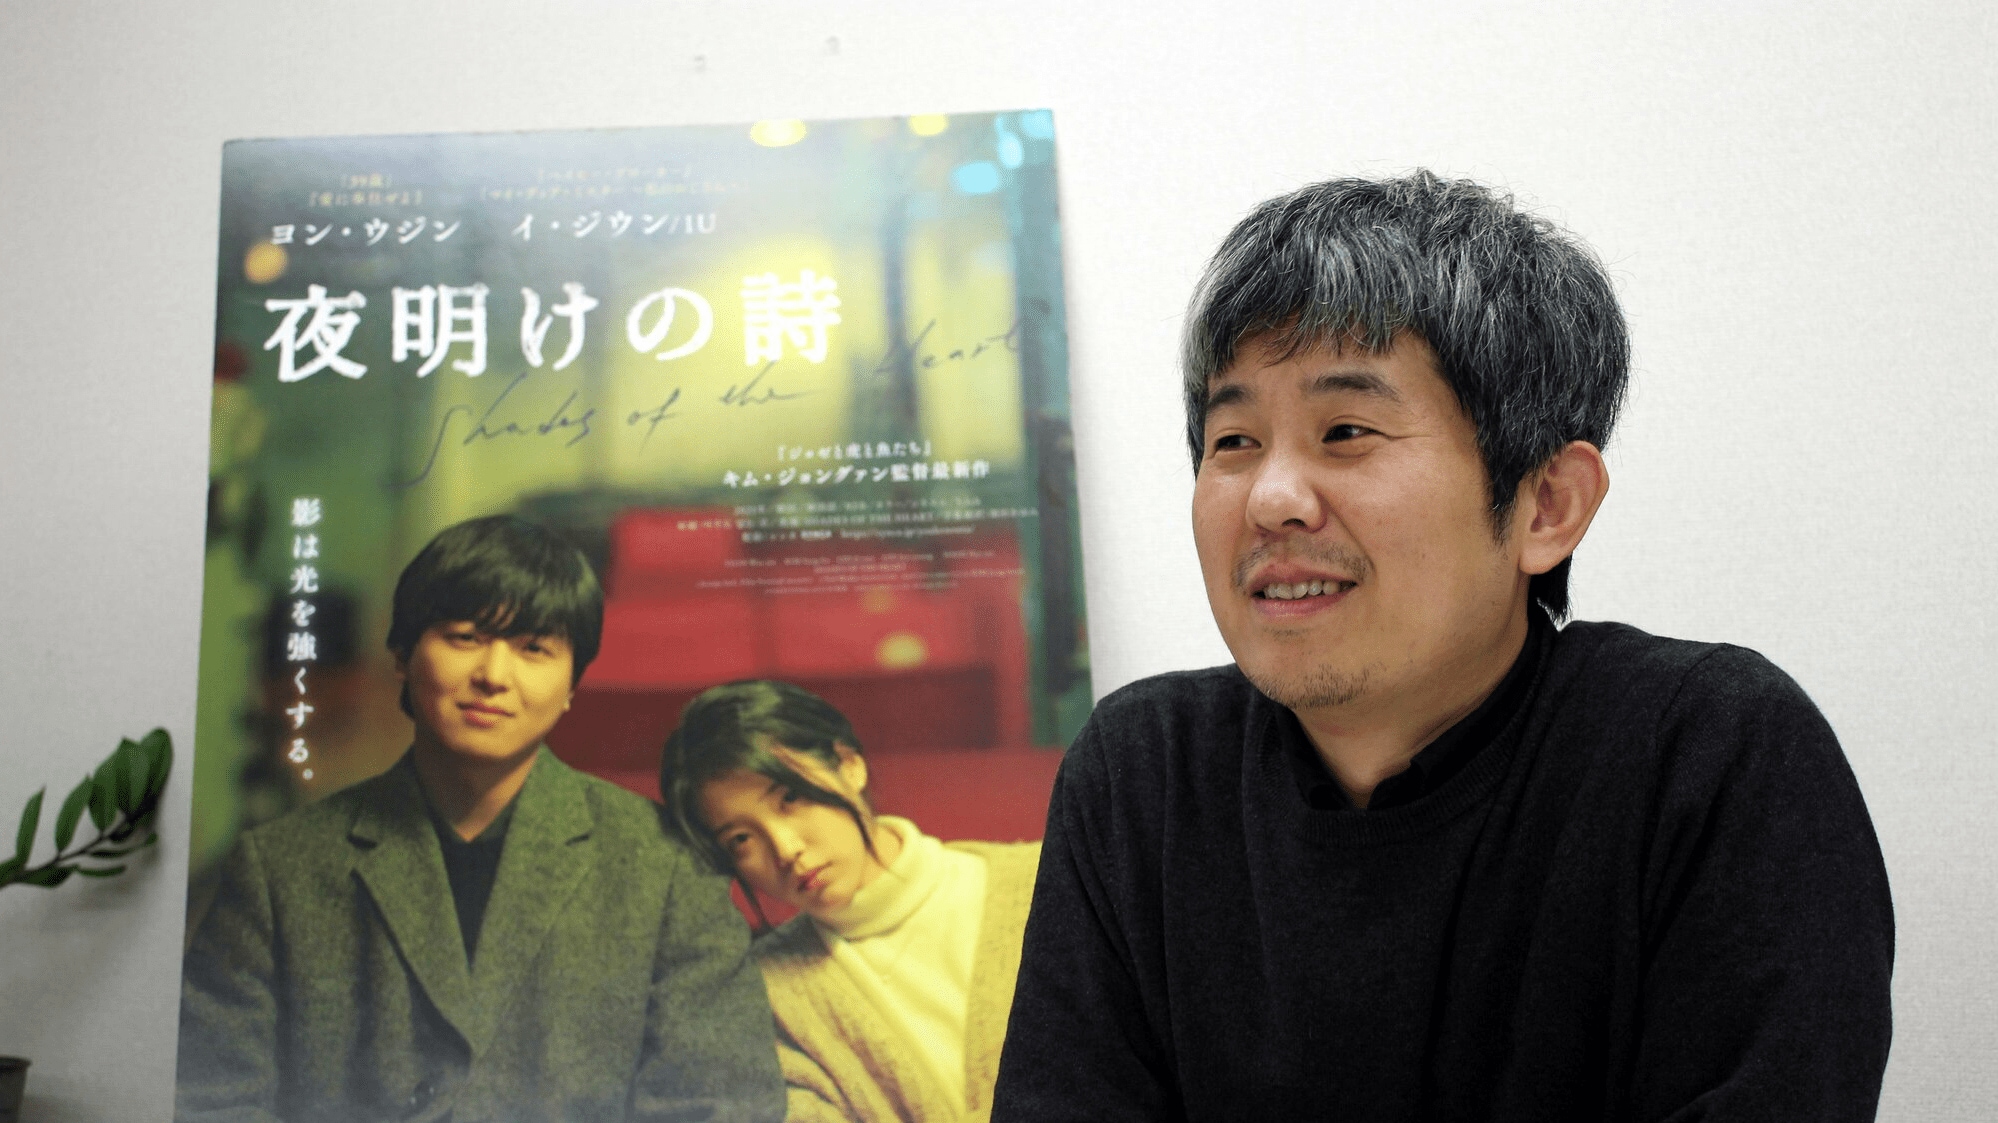 暗闇の向こうにある光 キム・ジョングァン監督「夜明けの詩」、広島で上映中 - 中国新聞デジタル